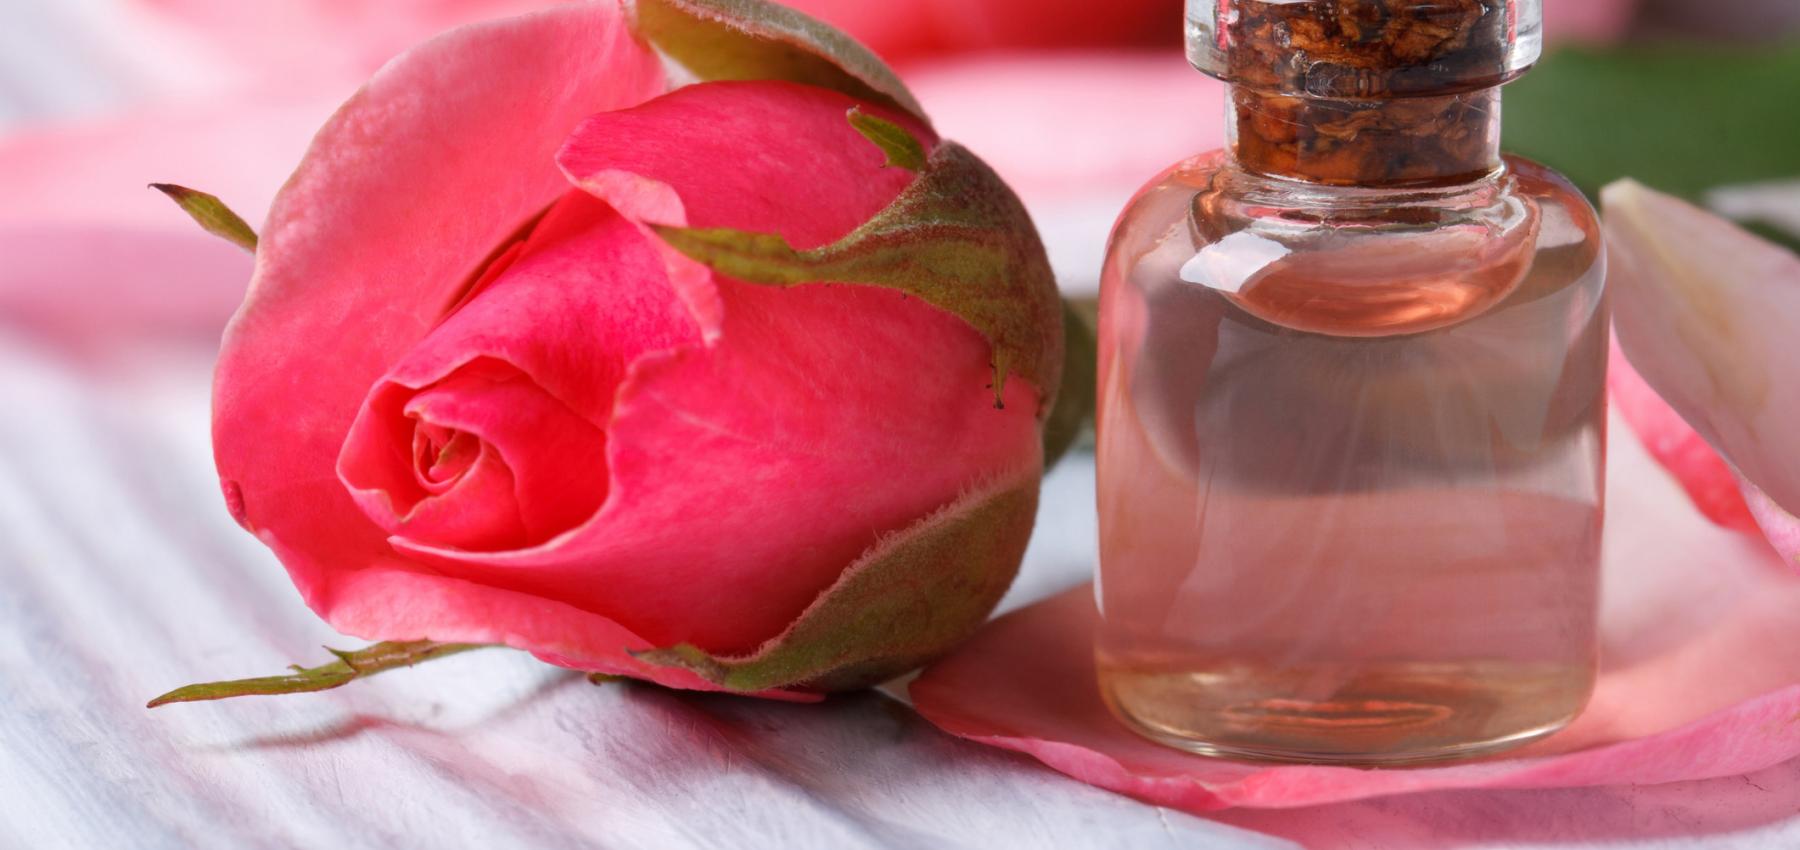 استخدامات ماء الورد وفوائده الصحية للشعر